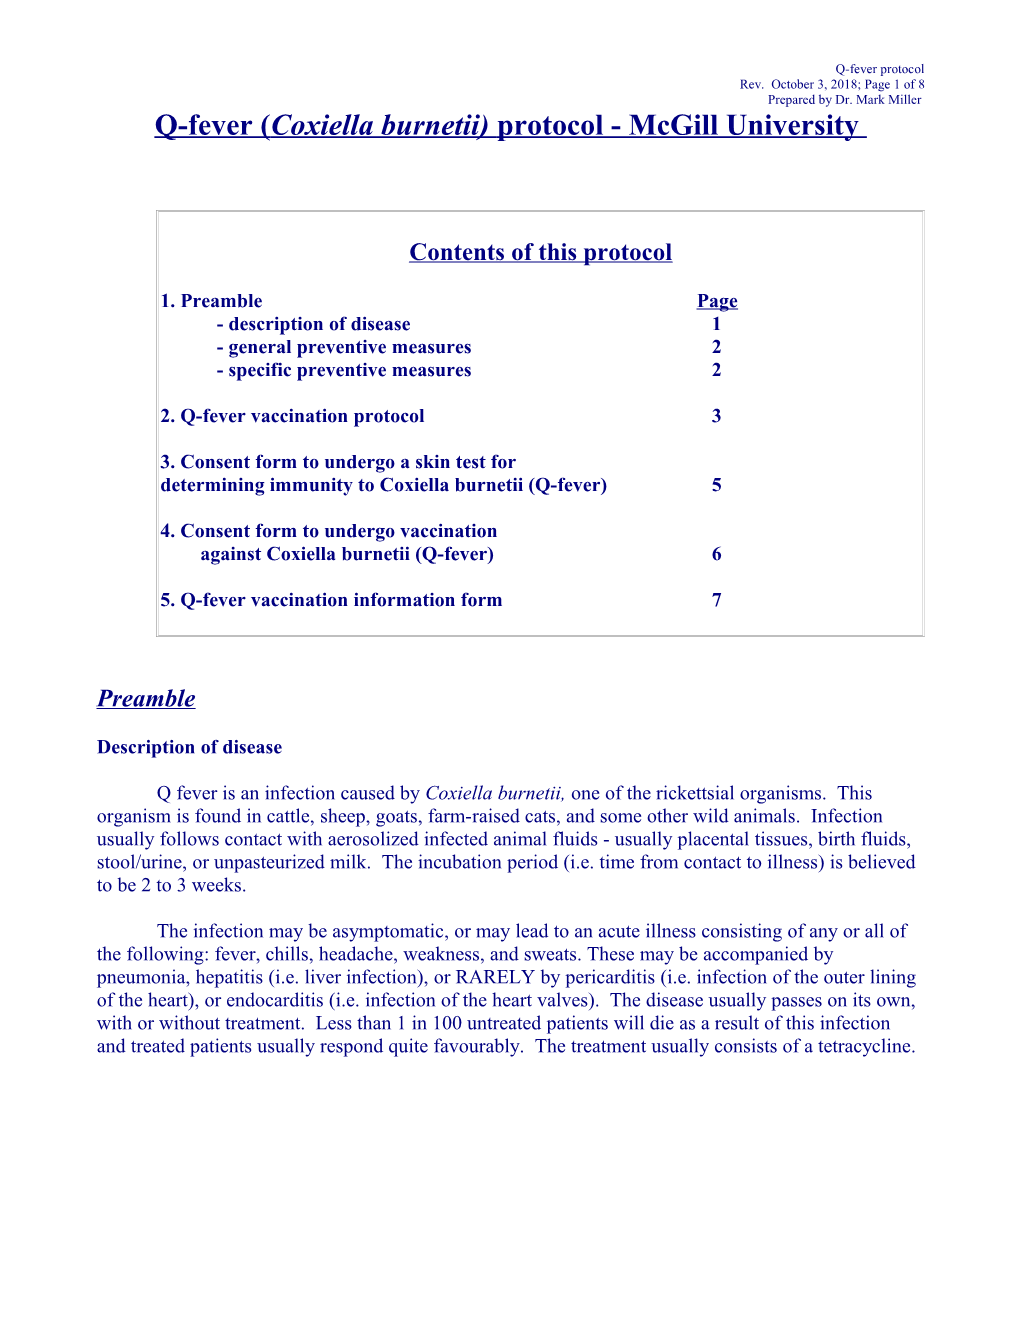 Q-Fever (Coxiella Burnetti) Protocol - Mcgill University